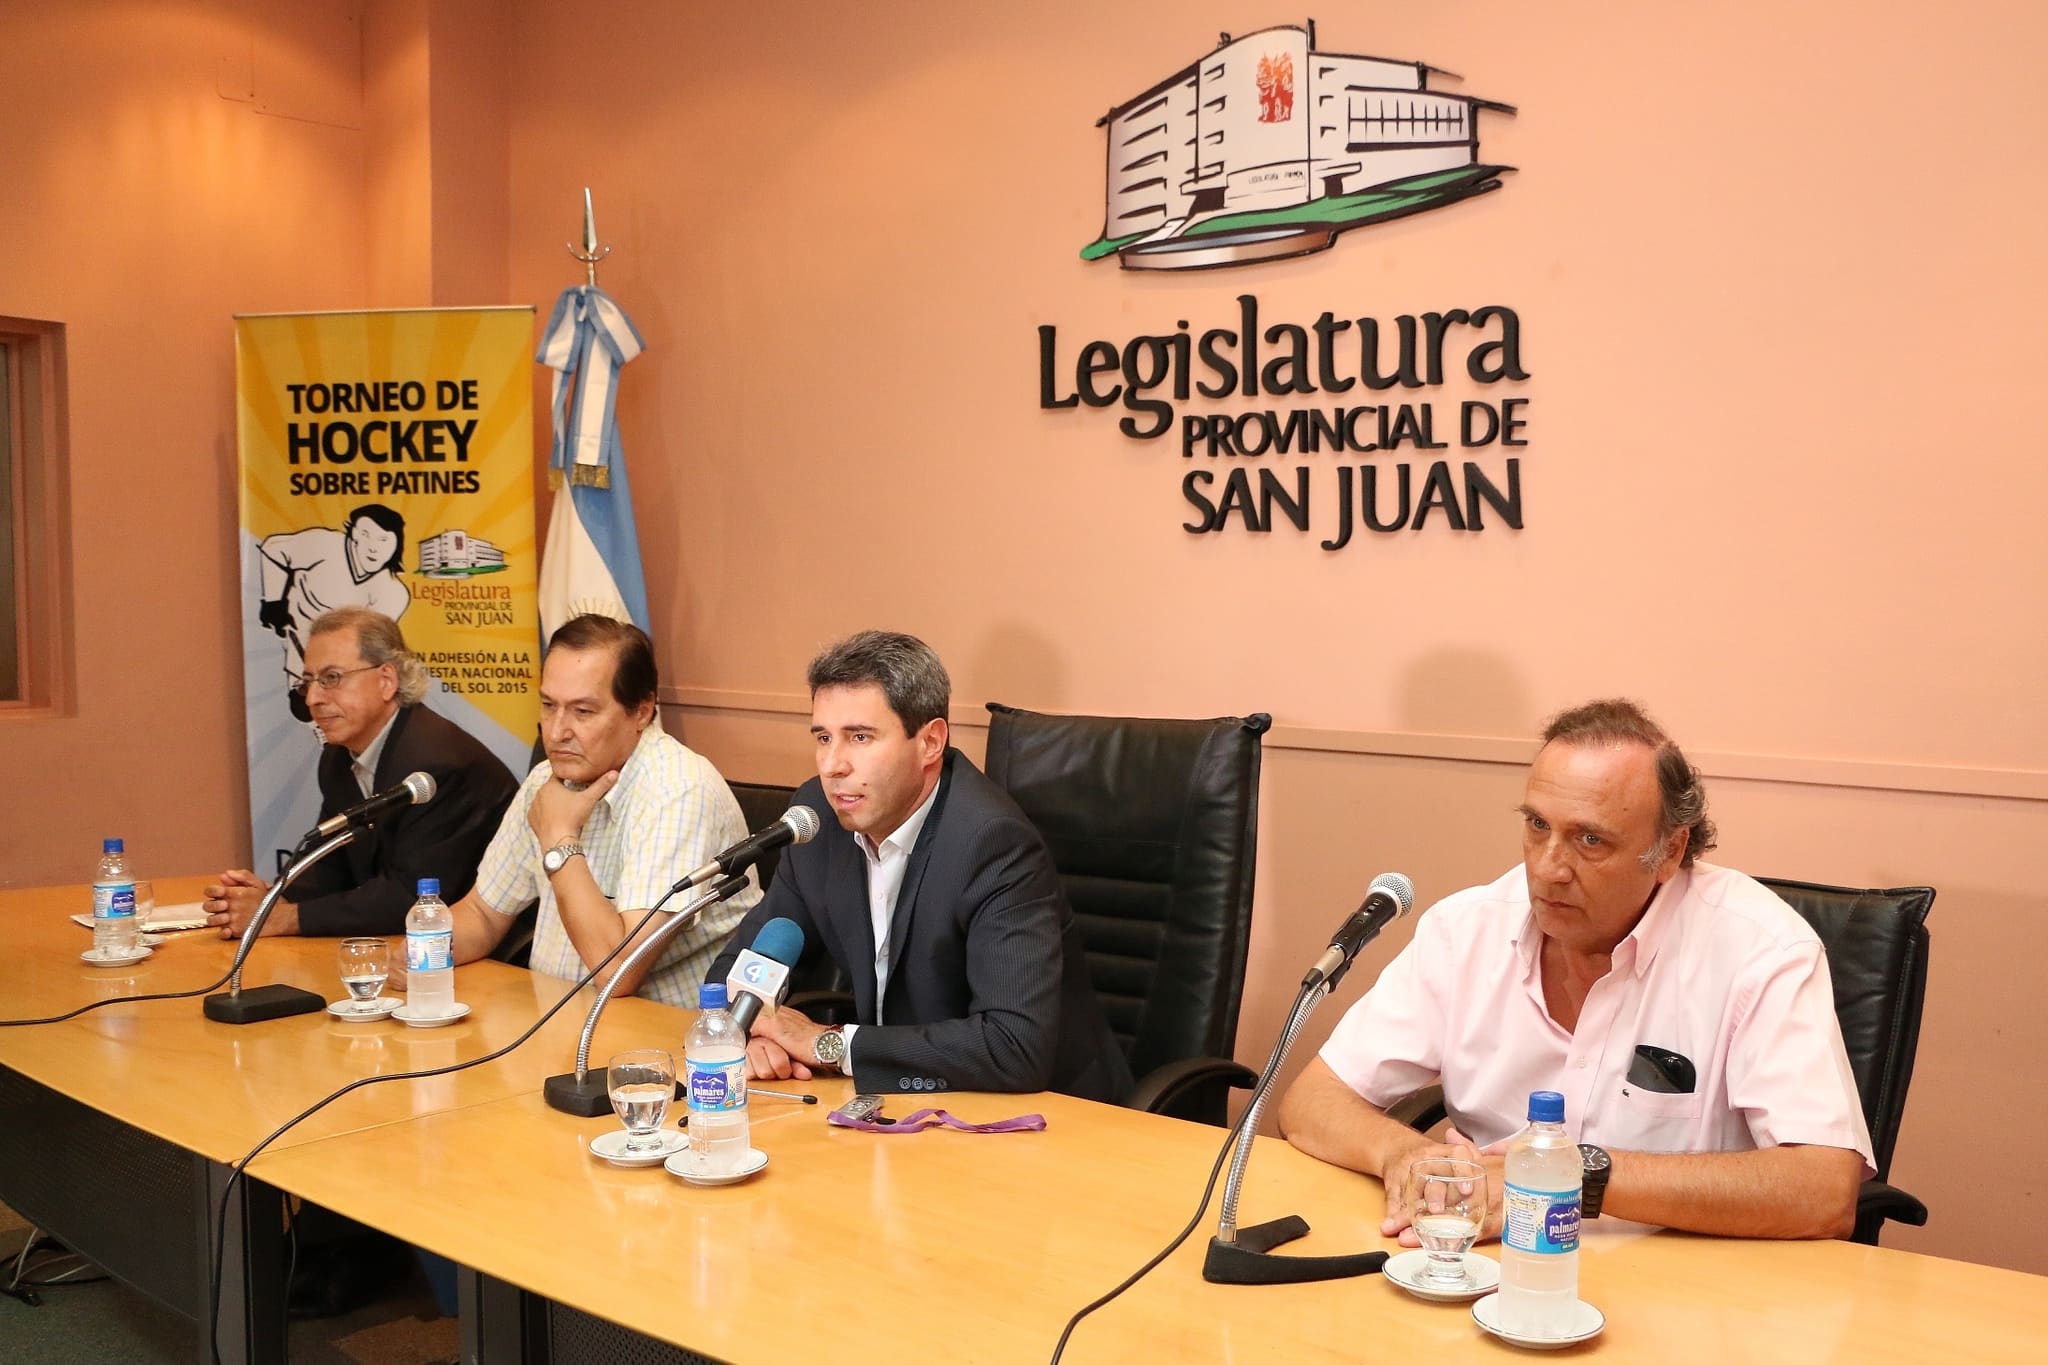 Conferencia de prensa sobre el Torneo de Hockey sobre Patines 2015, "Copa Legislatura Provincial". 